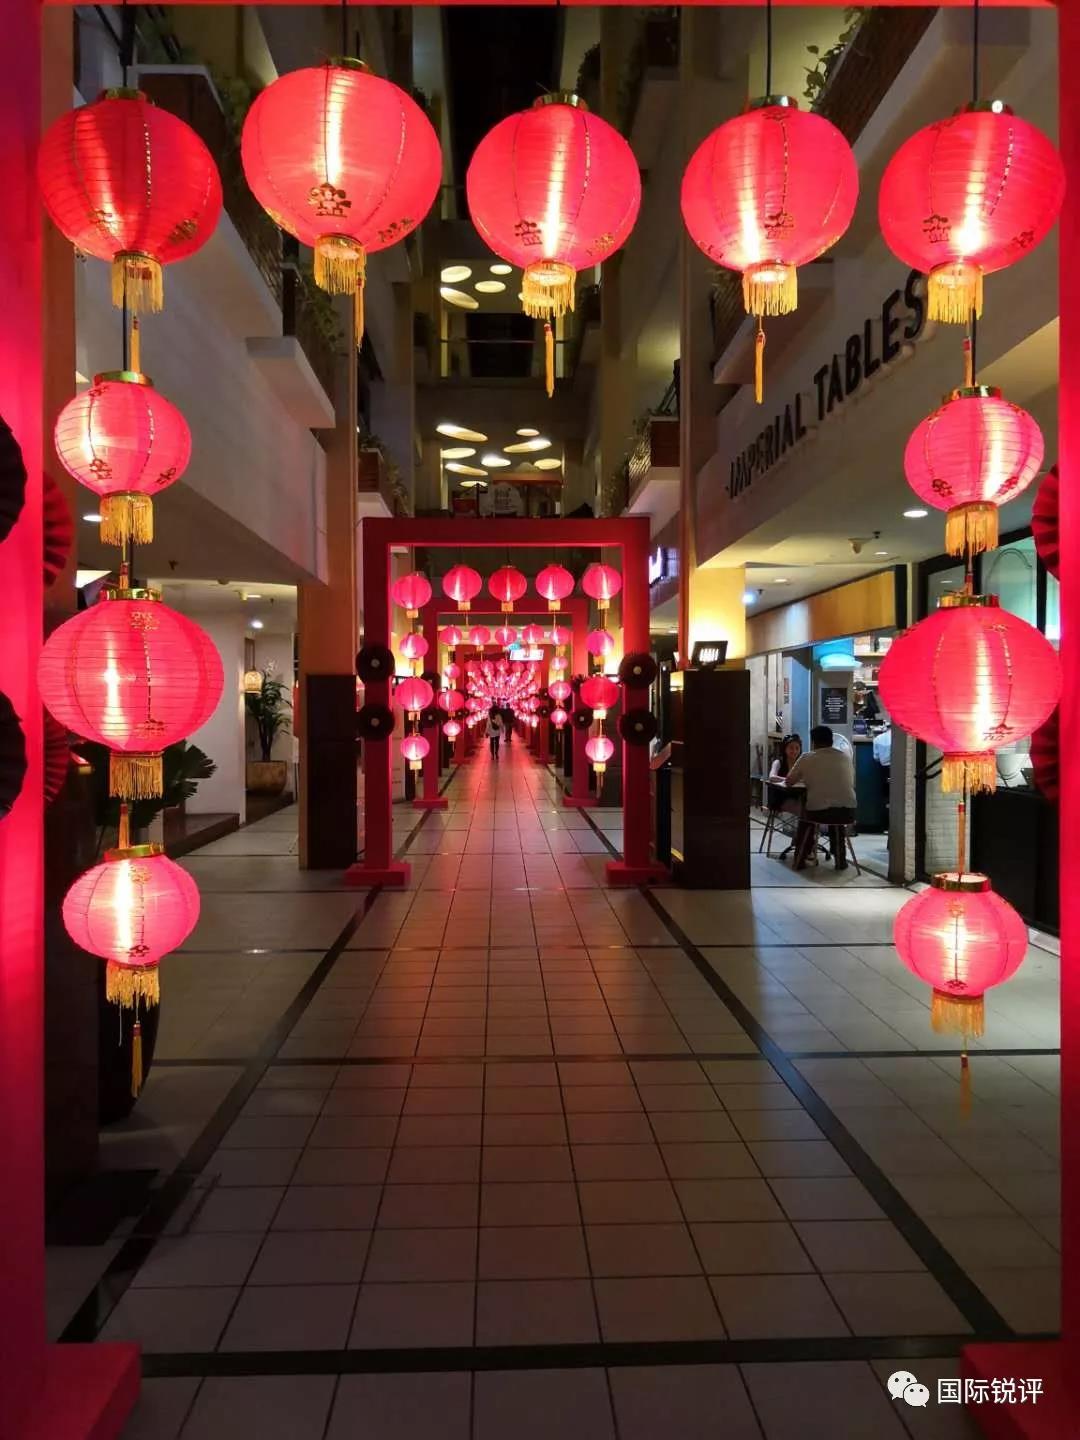 當地時間2019年1月29日A印尼雅加達A一家商場裡早早掛起了紅燈籠A慶祝中國農曆新年C攝影G李樹坤